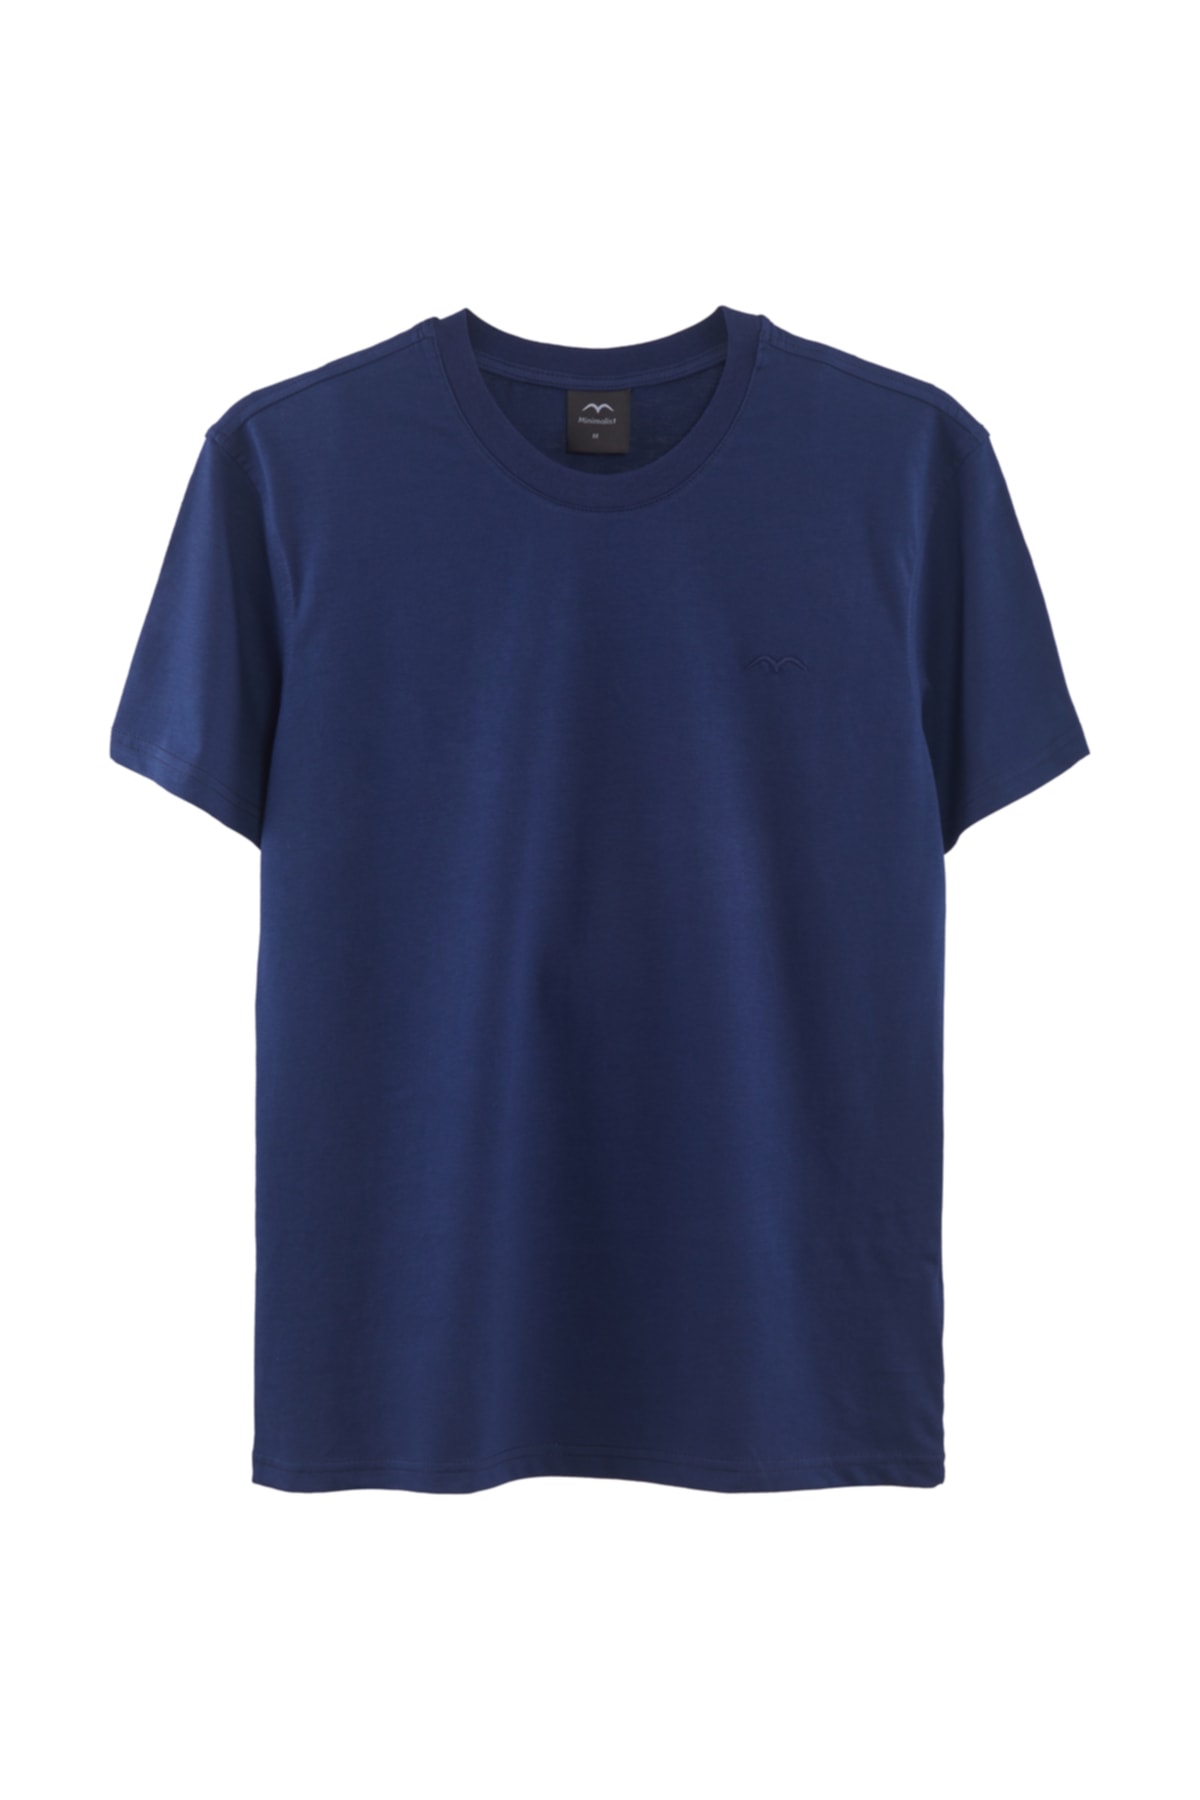 Minimalist Unisex Lacivert Basic T-shirt